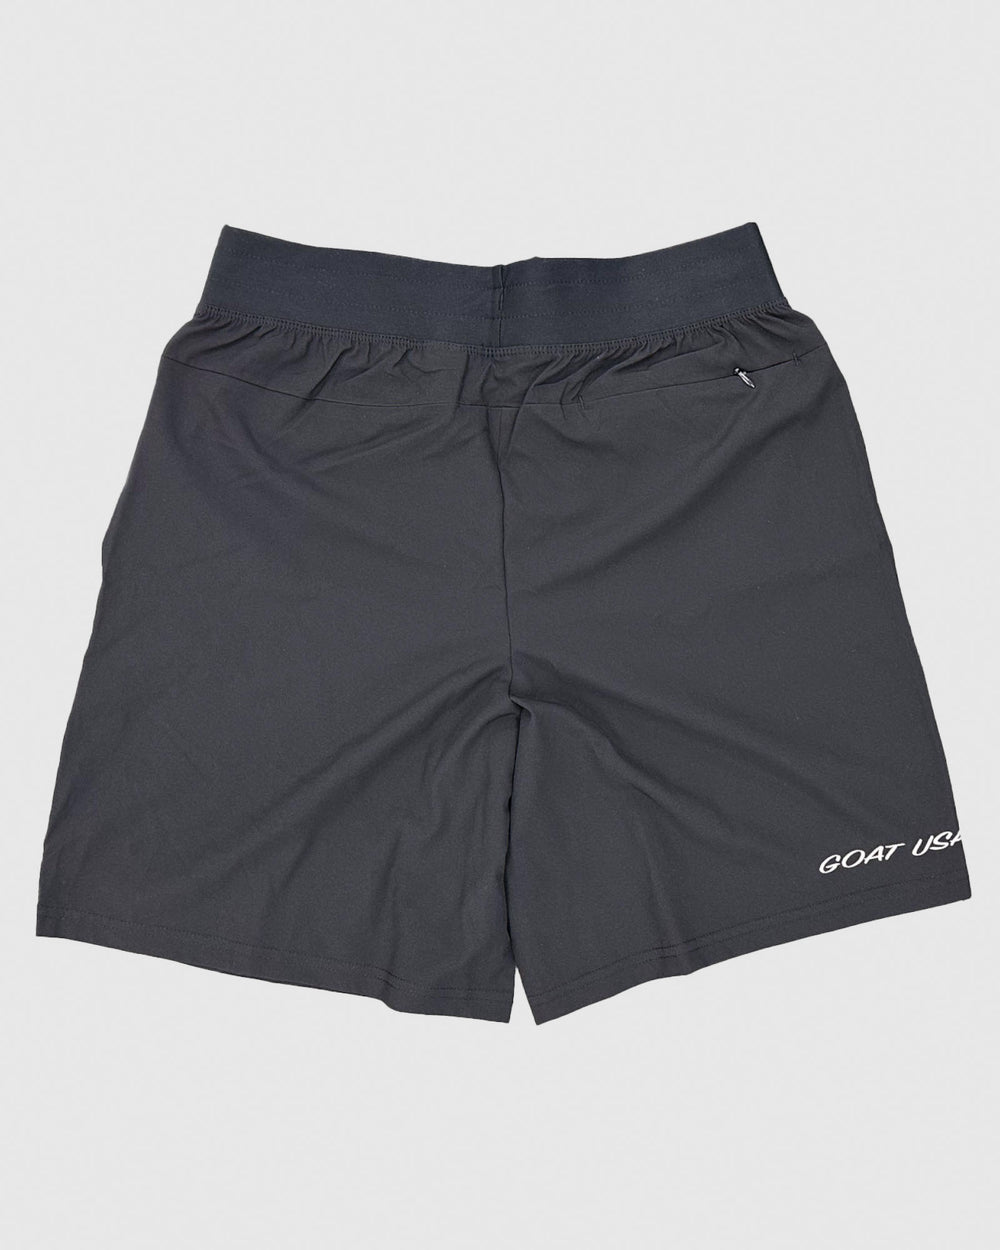 Backside of black athletic shorts